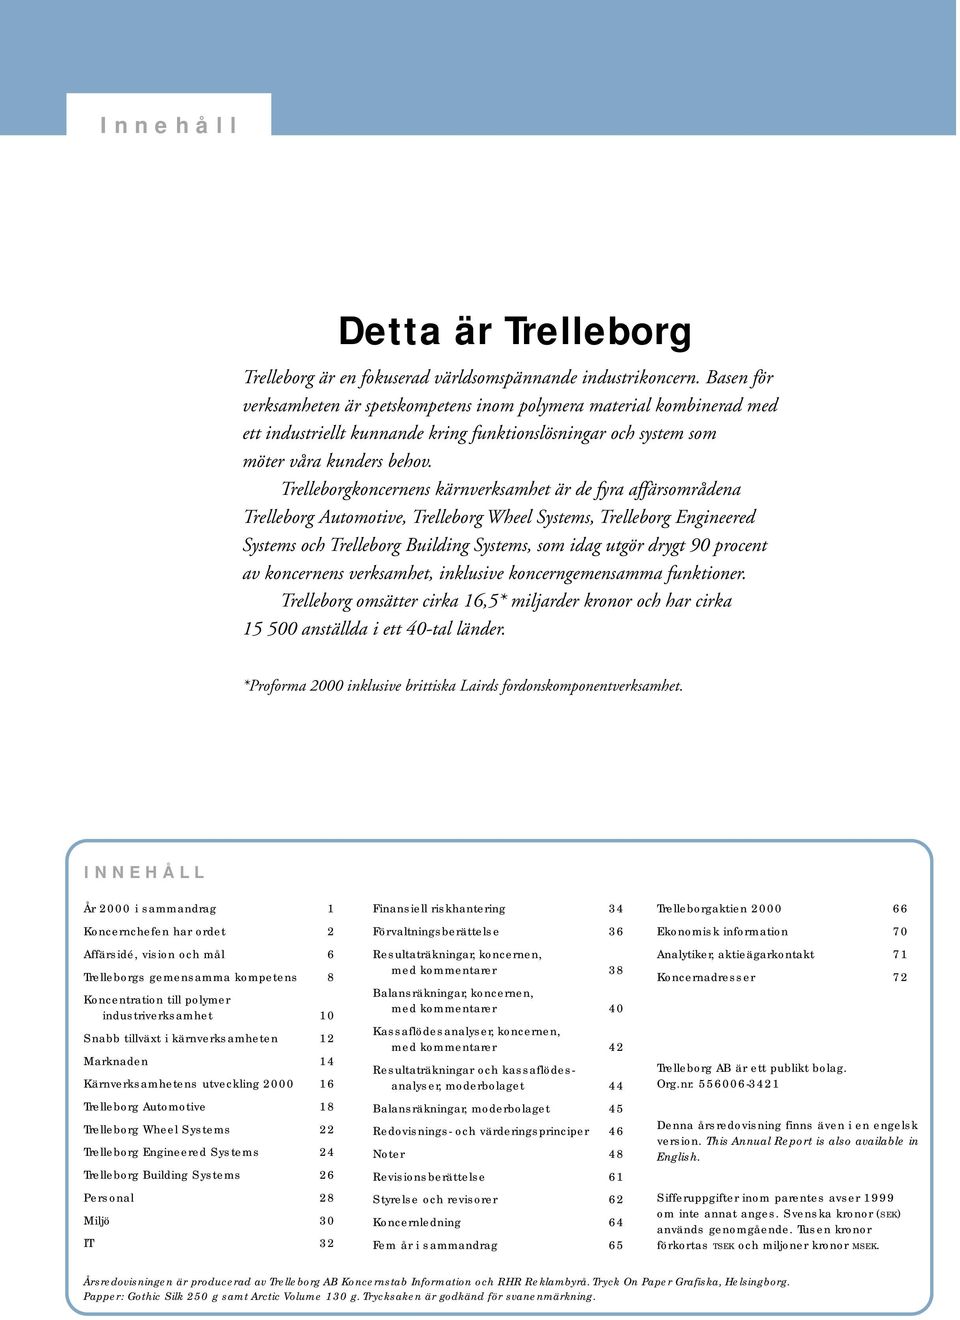 Trelleborgkoncernens kärnverksamhet är de fyra affärsområdena Trelleborg Automotive, Trelleborg Wheel Systems, Trelleborg Engineered Systems och Trelleborg Building Systems, som idag utgör drygt 90